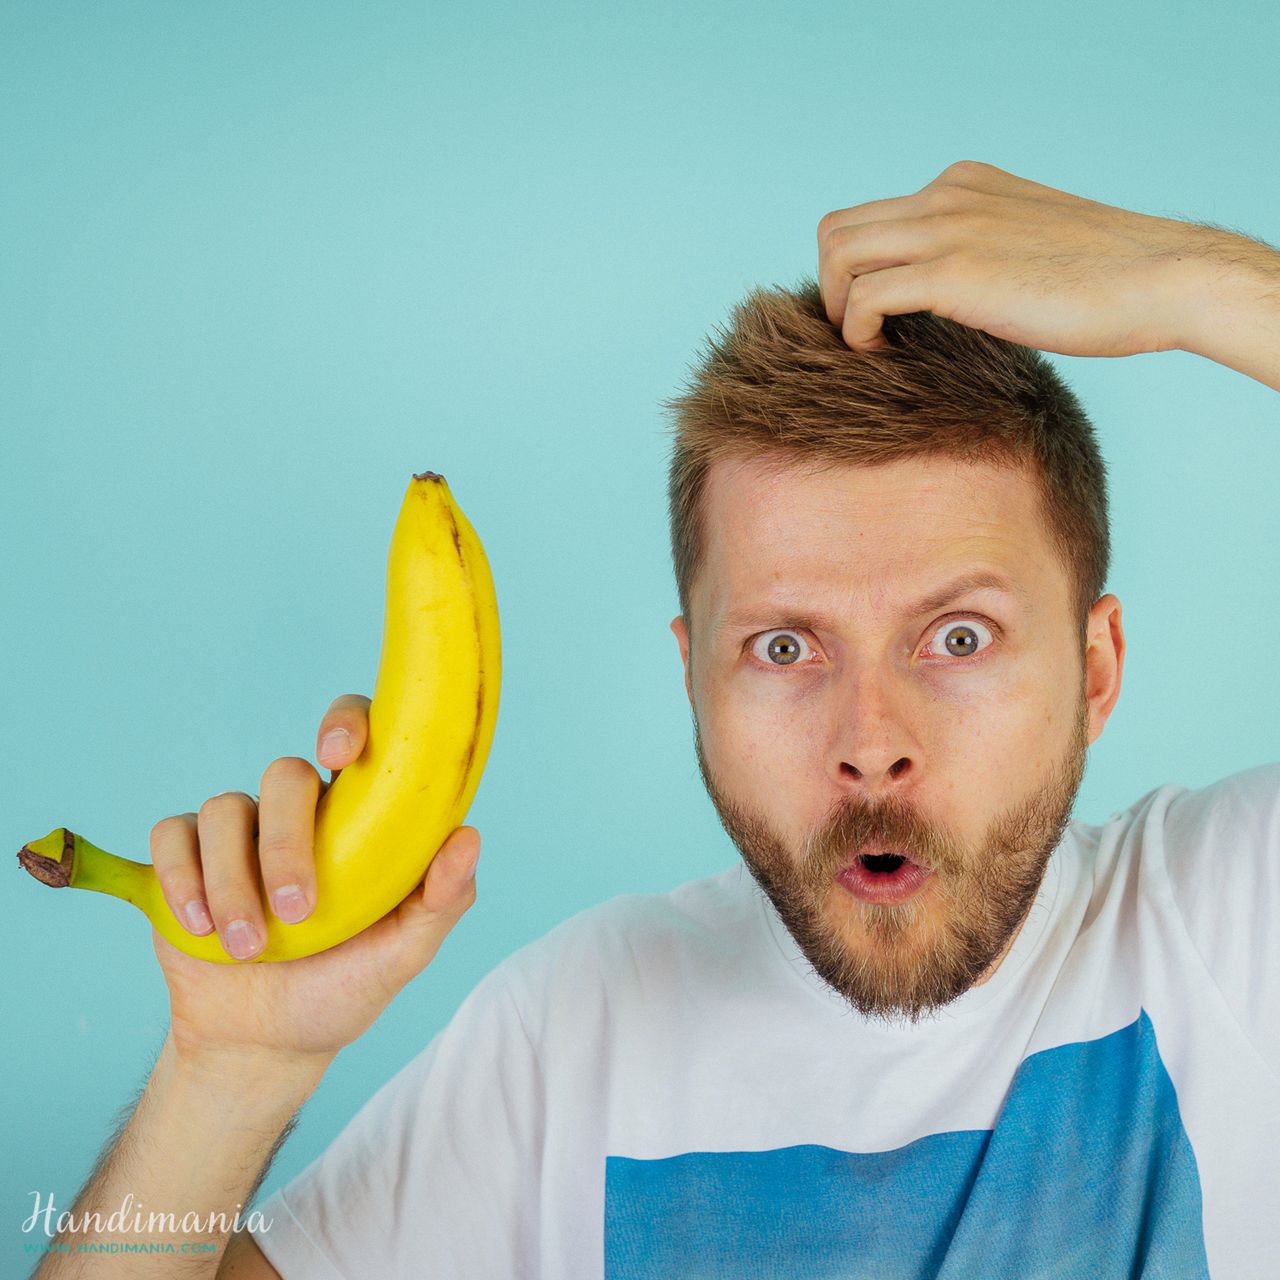 How To Peel A Banana Like A Monkey